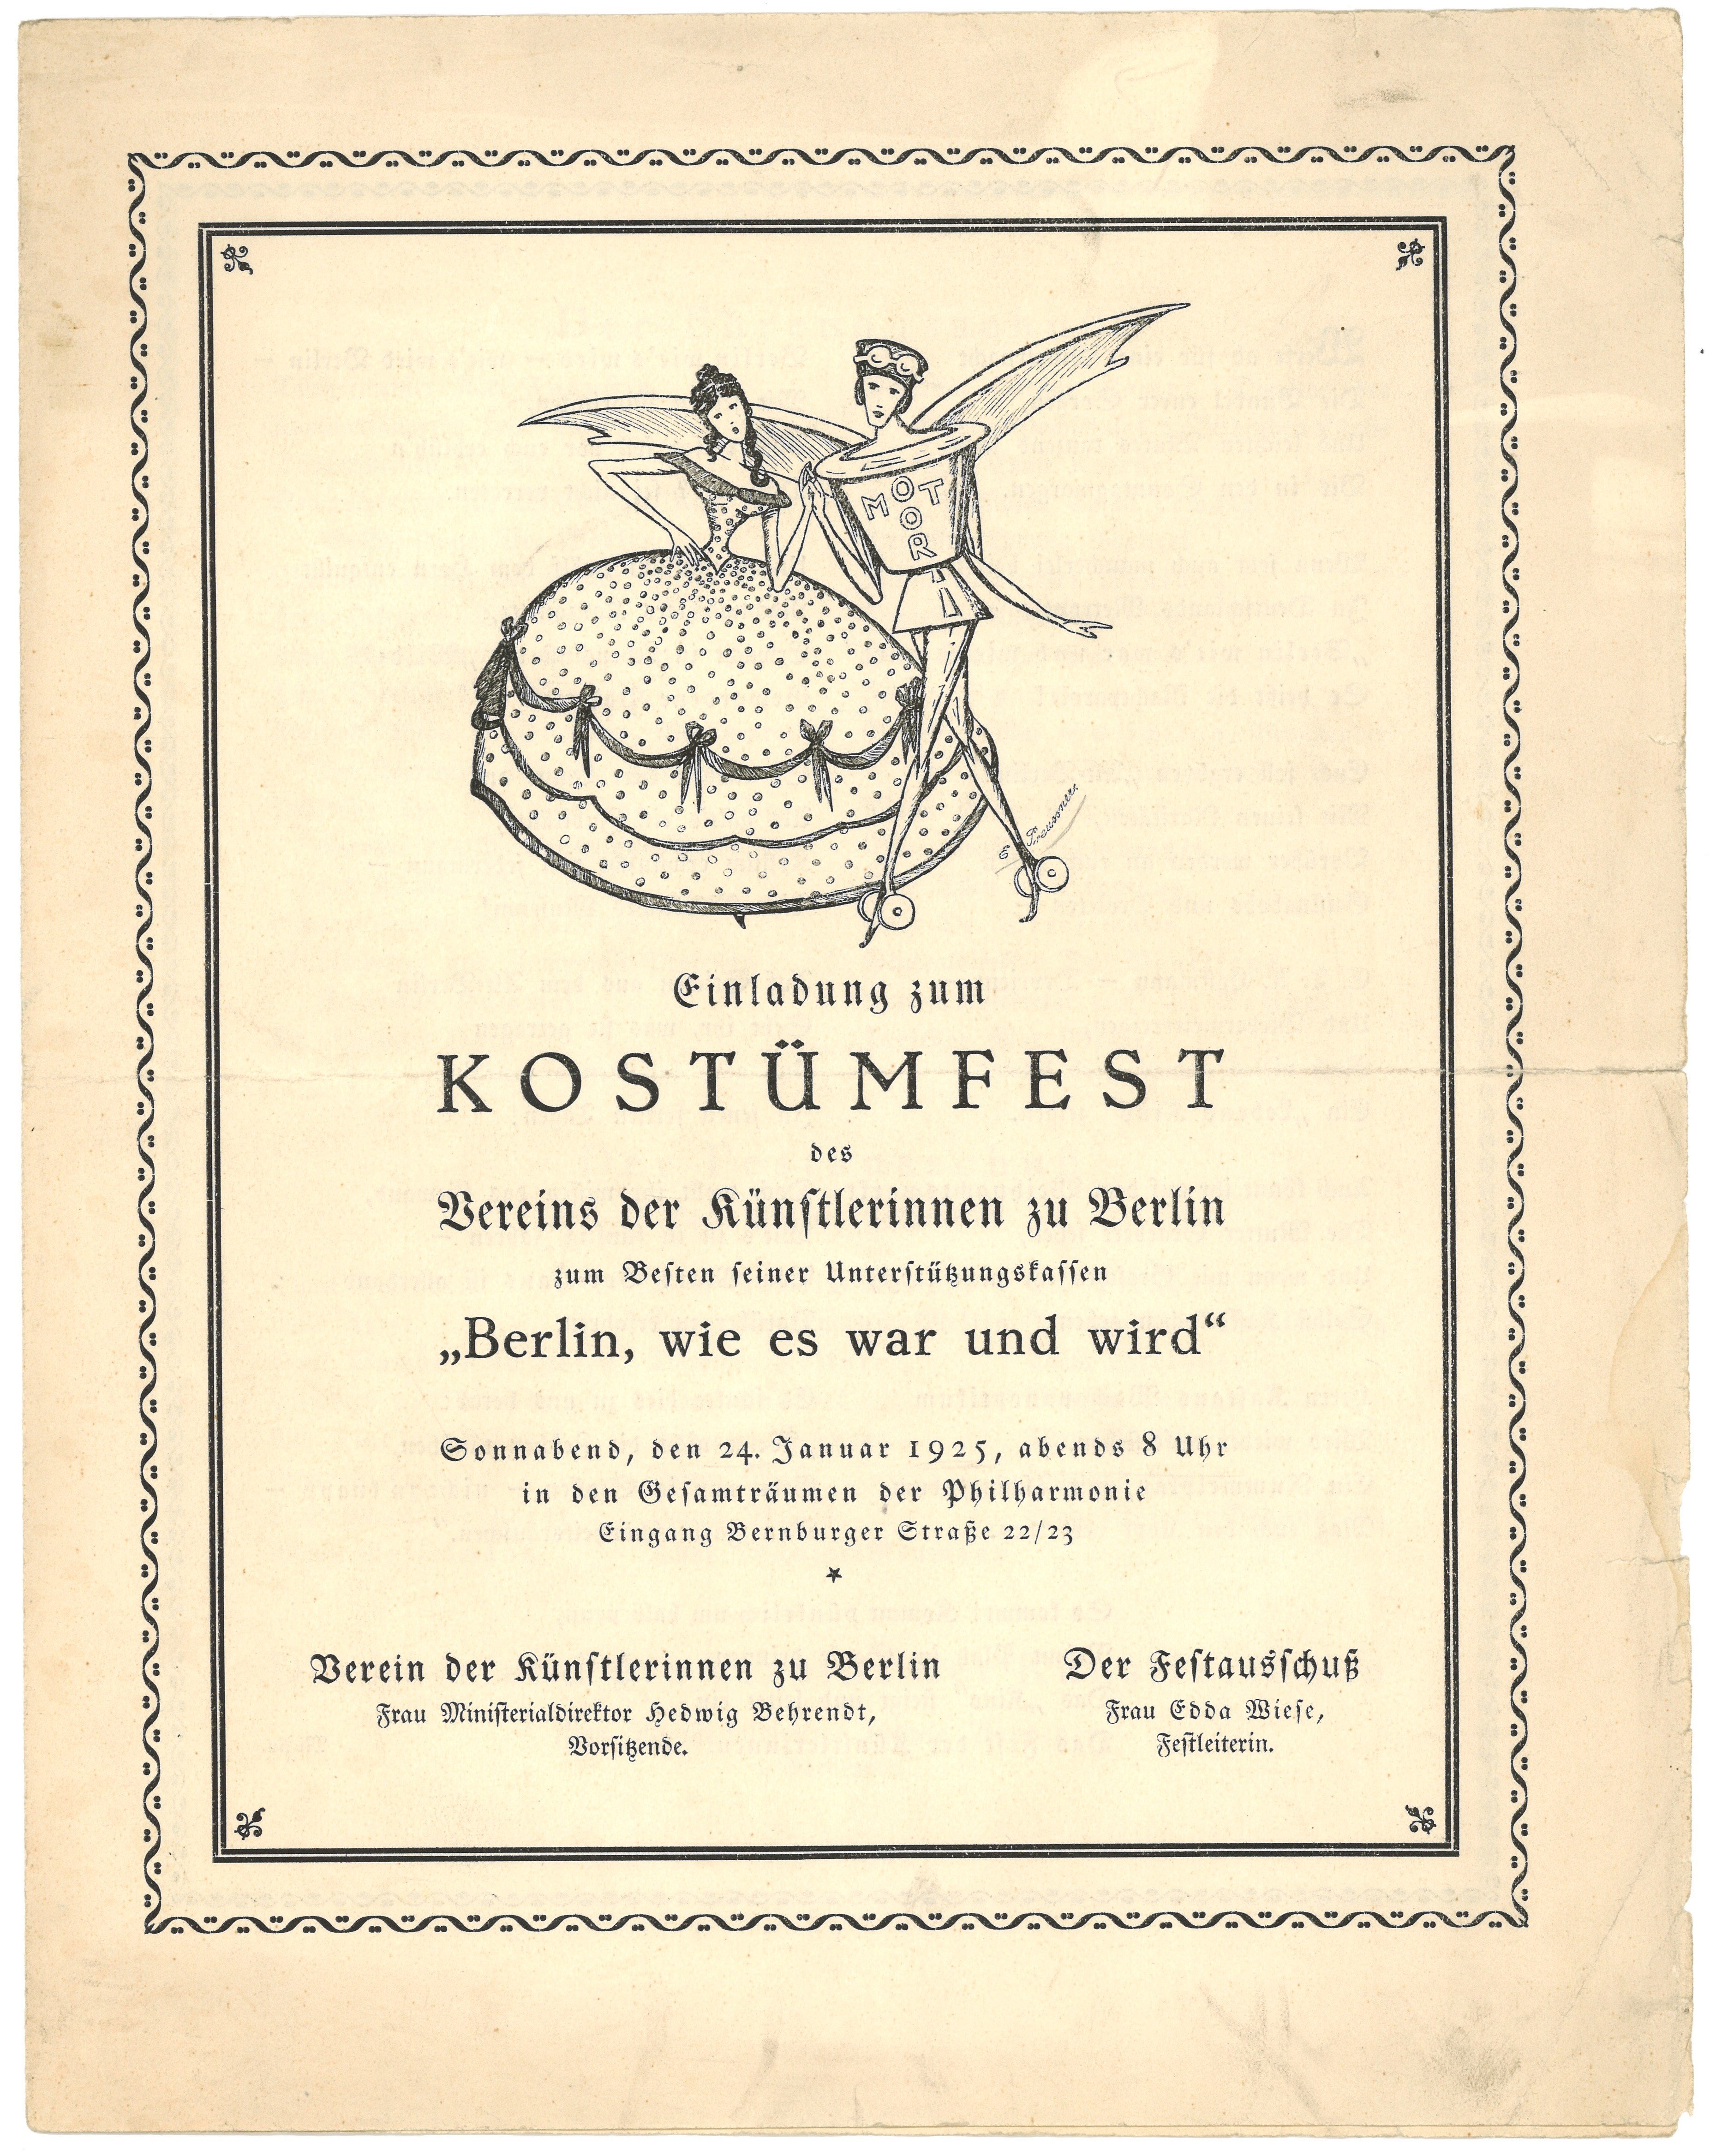 Einladung zum Kostümfest des Vereins der Künstlerinnen zu Berlin 1925 (Landesgeschichtliche Vereinigung für die Mark Brandenburg e.V., Archiv CC BY)